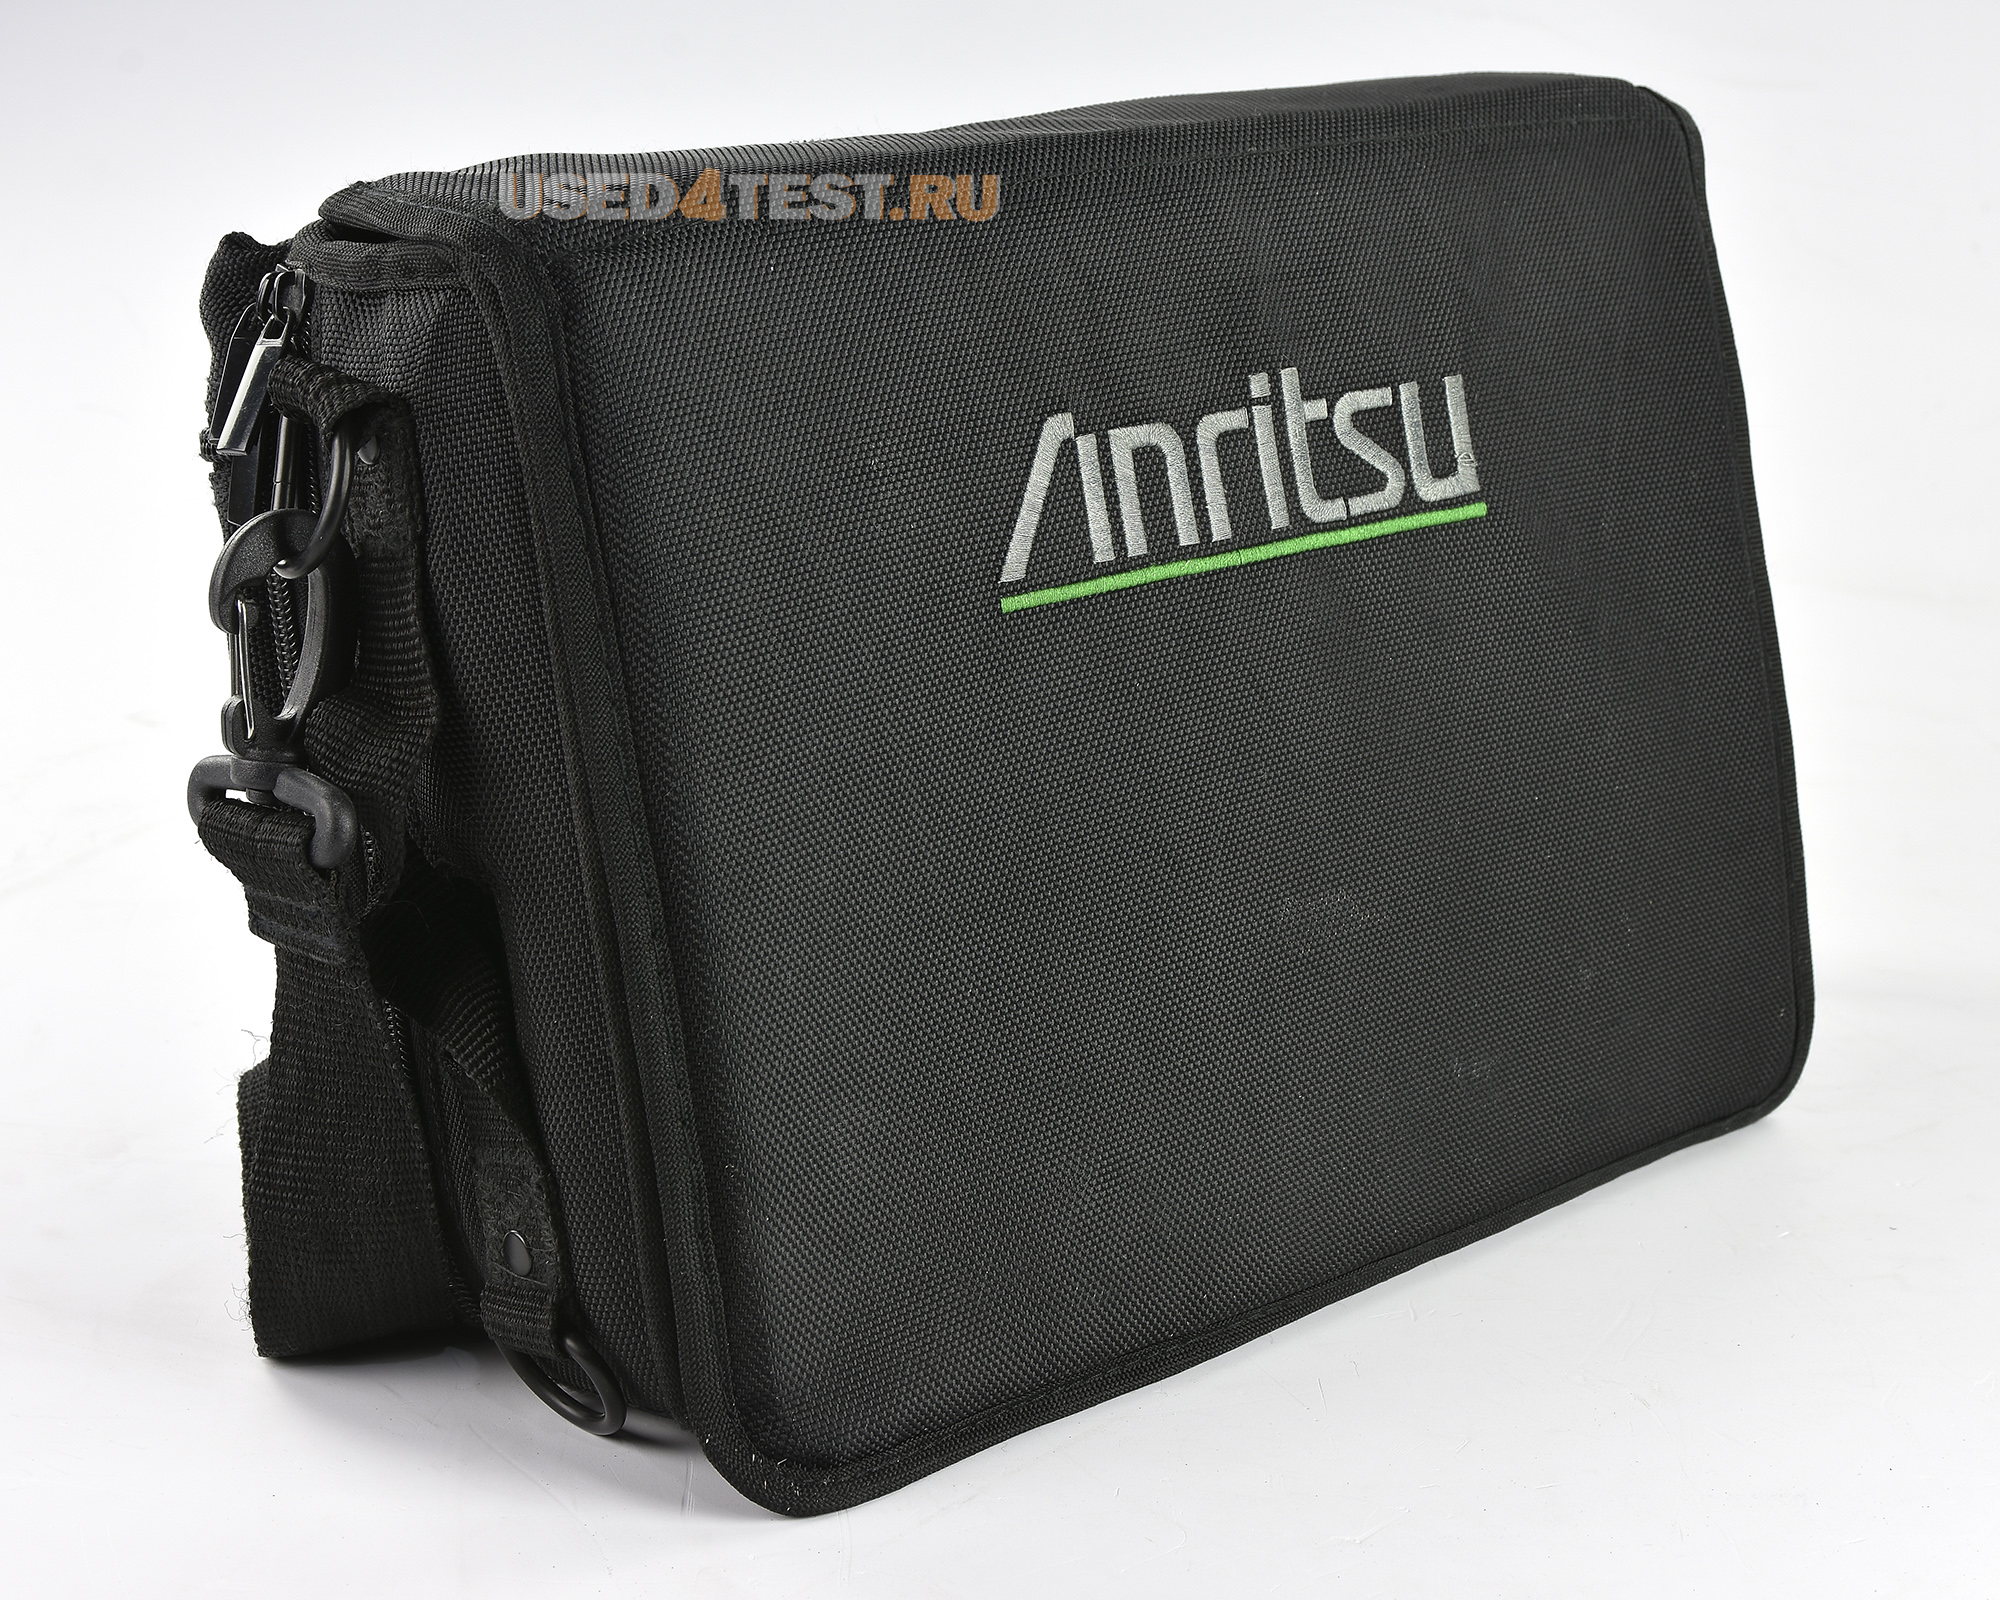 Портативный анализатор спектра
 Anritsu MS2721B
с диапазоном от 9 кГц до 7,1 ГГц
